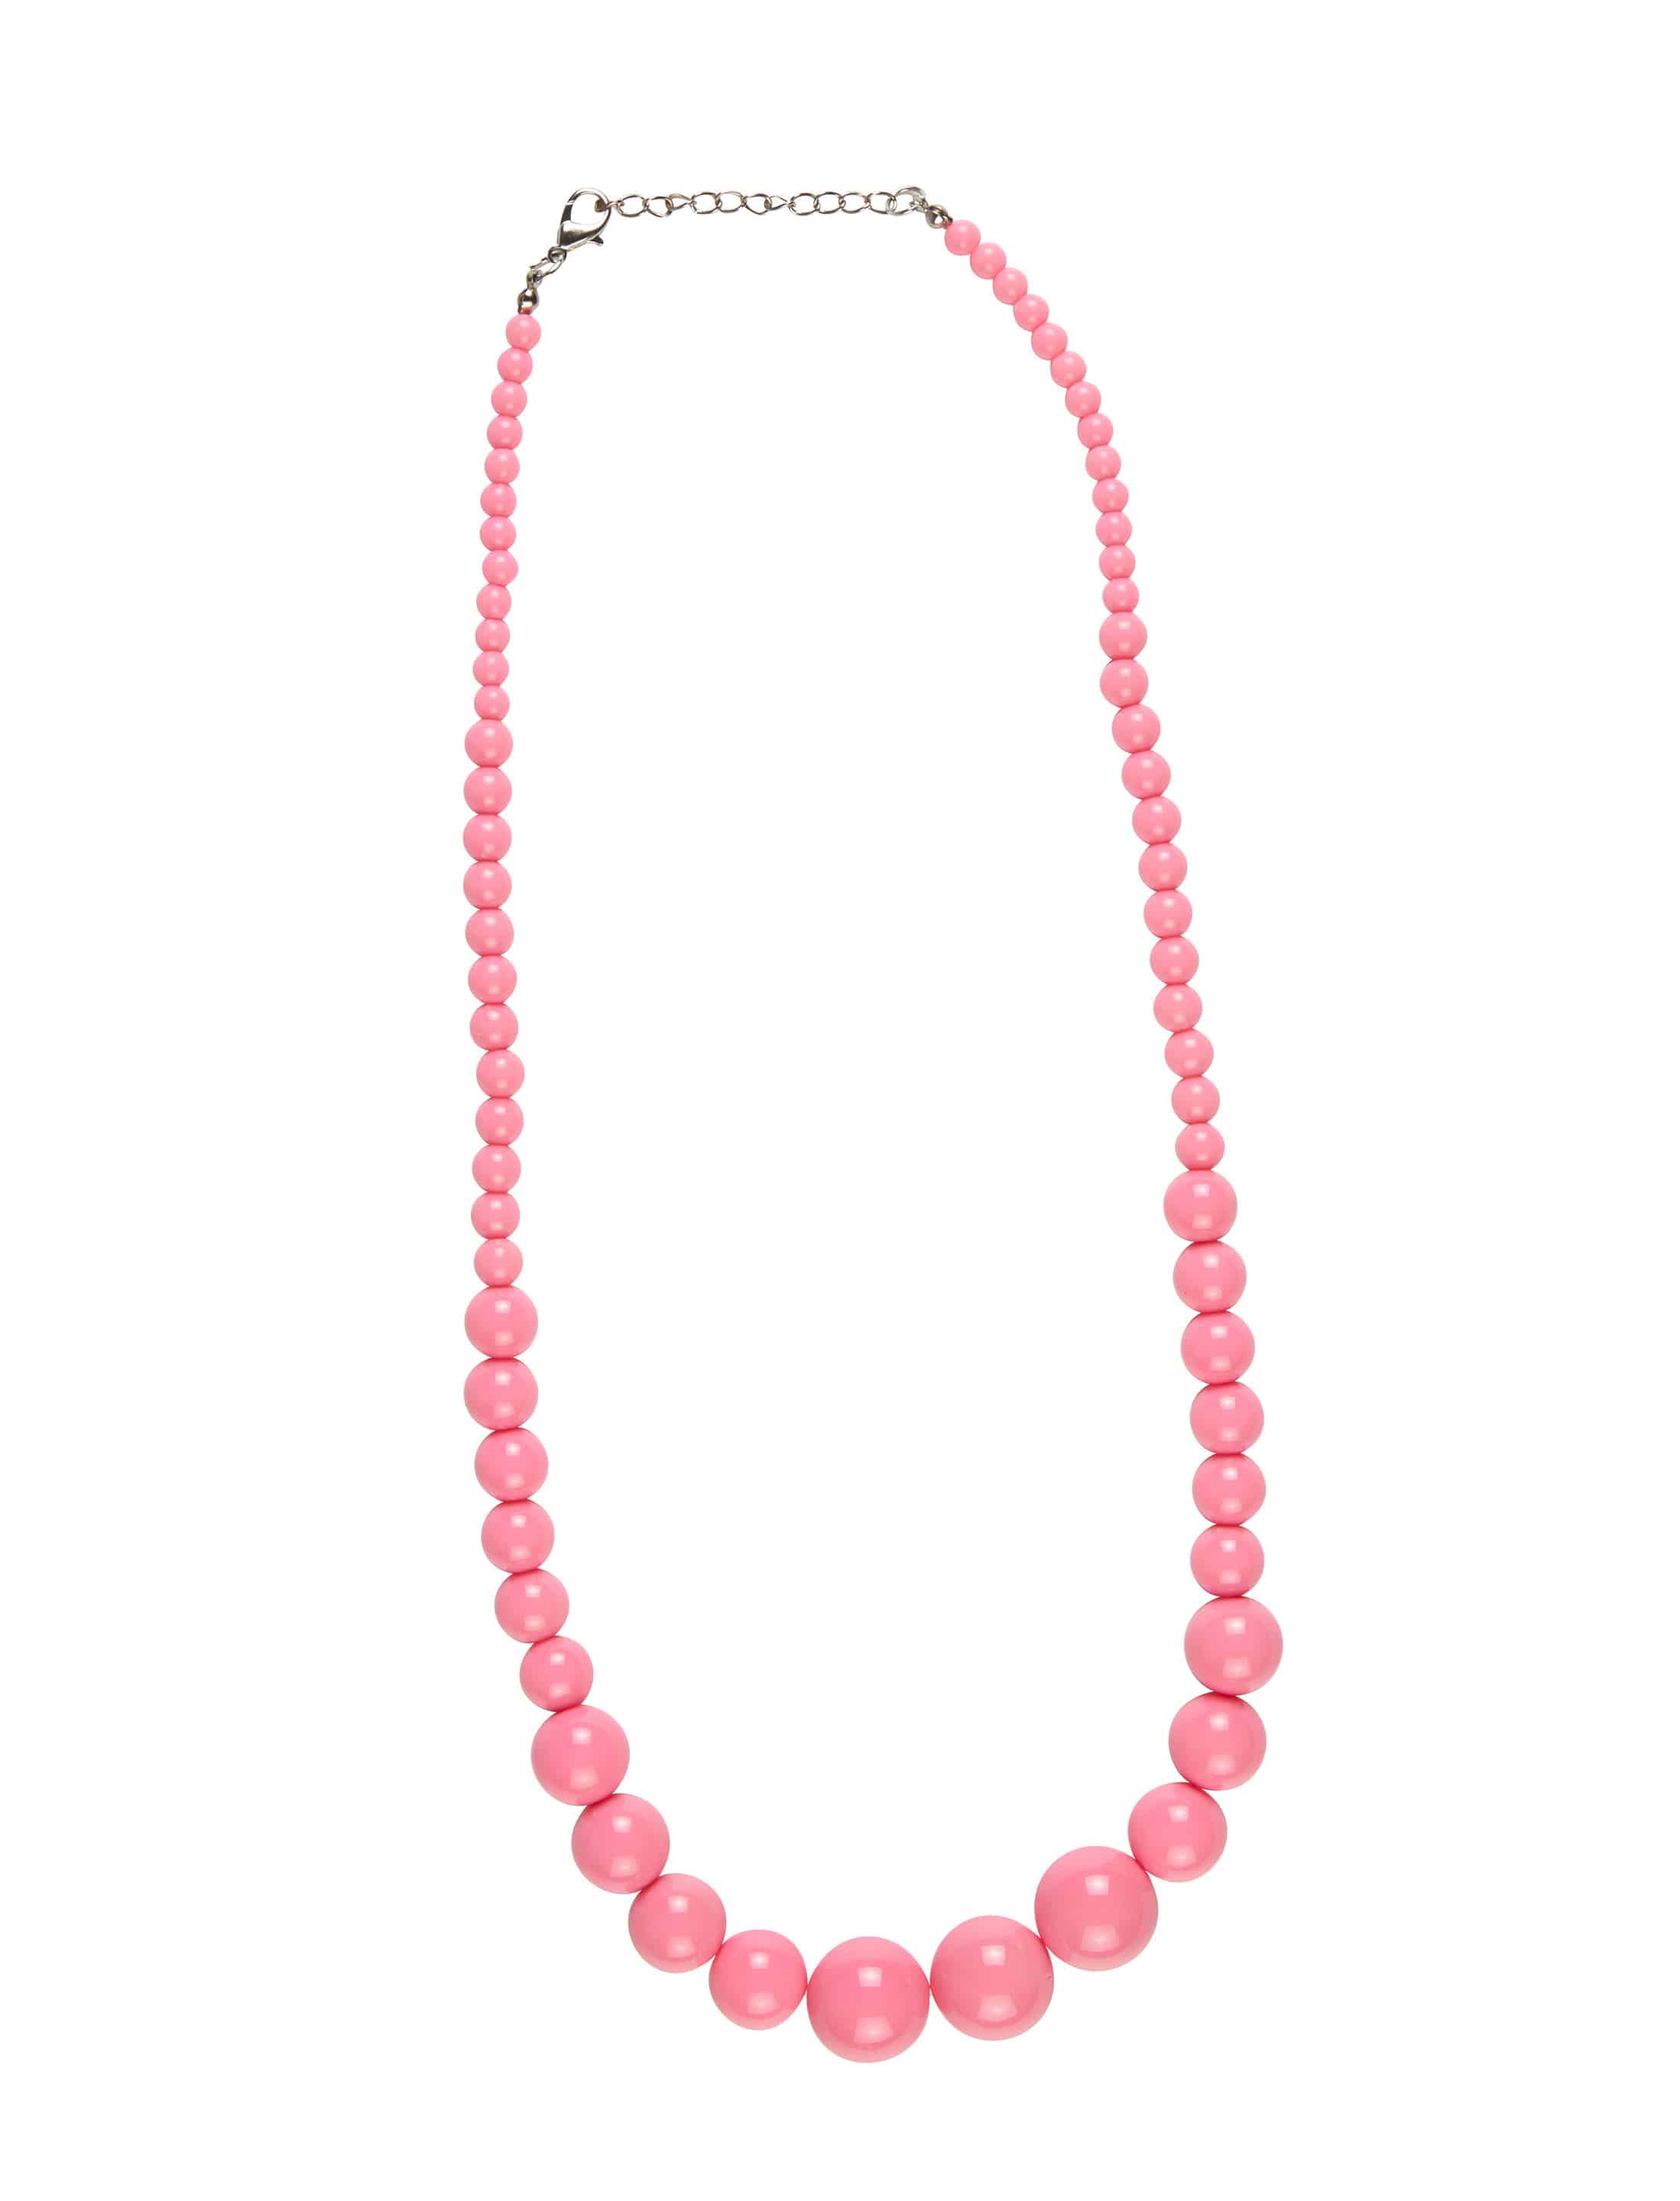 Halskette Perlen pink